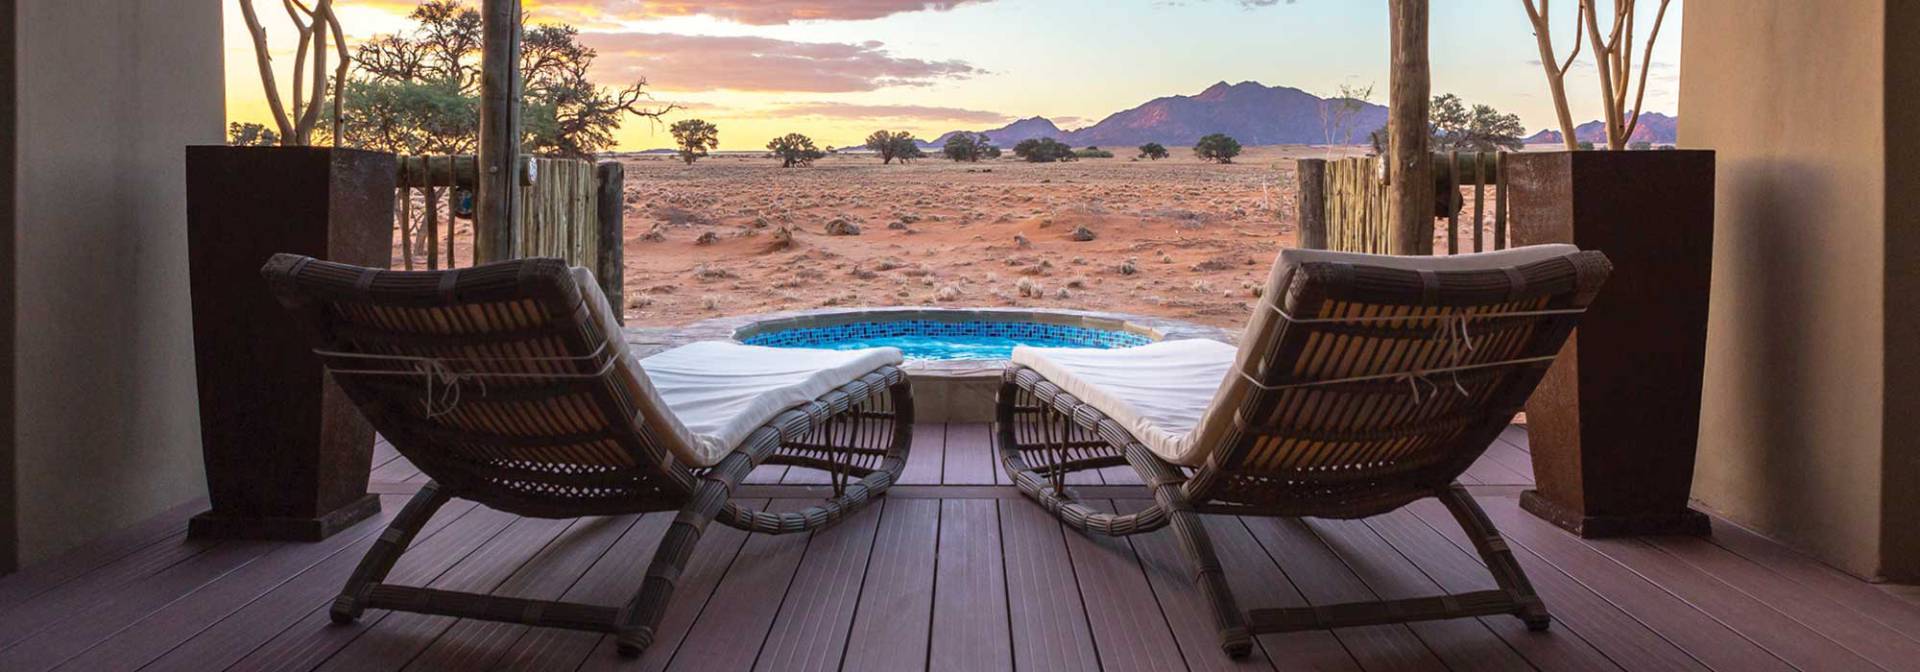 Wonderful Lodge in Namibia